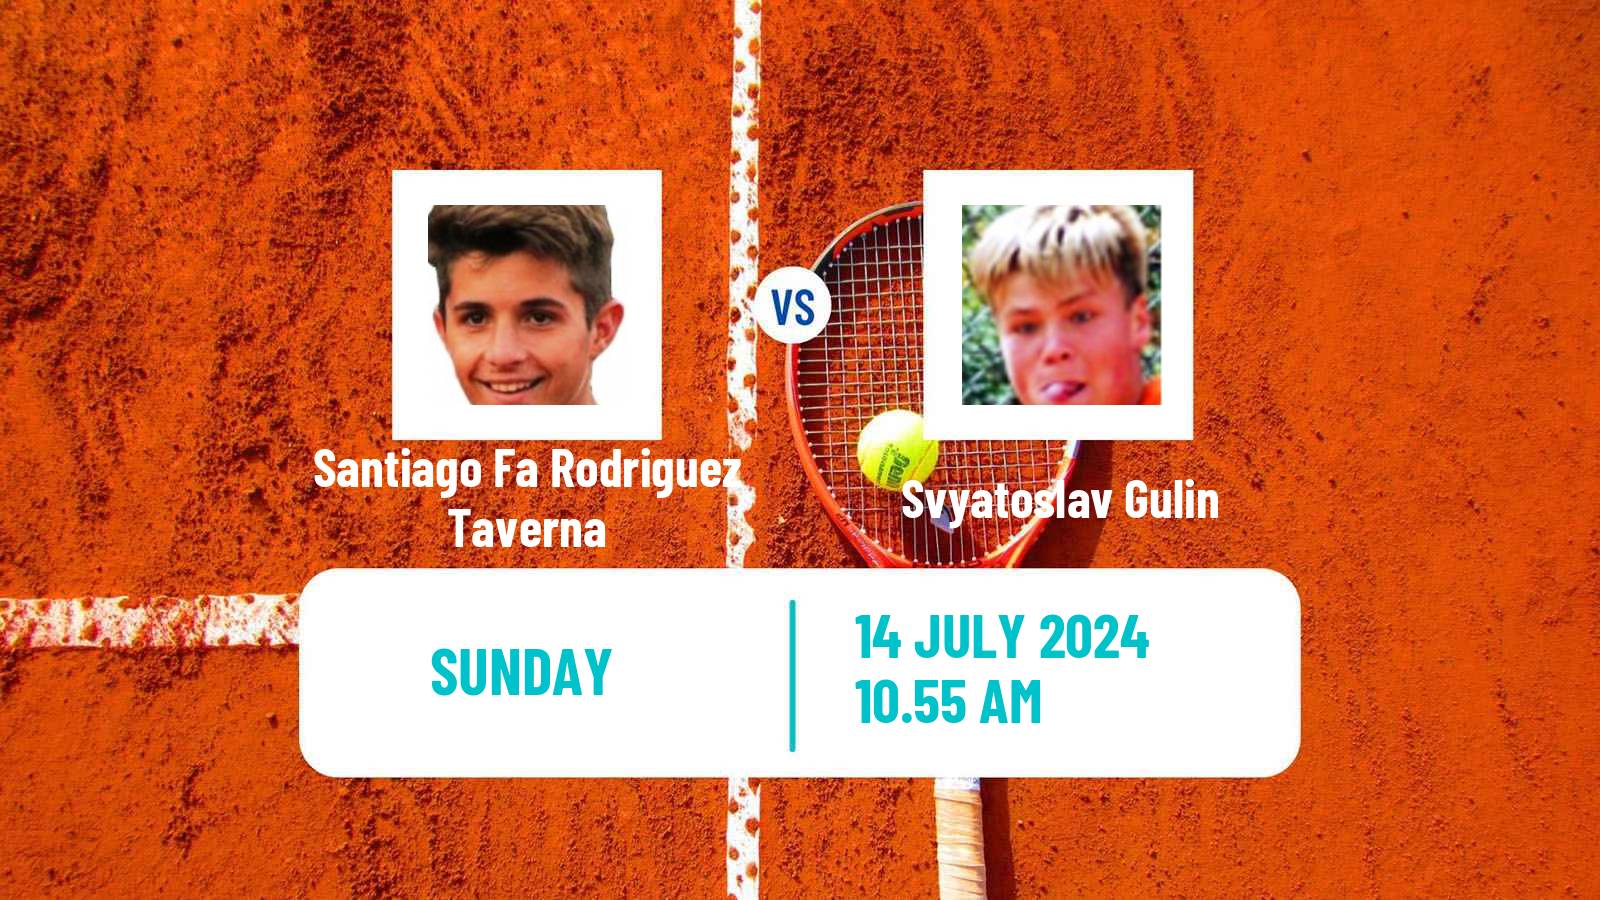 Tennis Amersfoort Challenger Men Santiago Fa Rodriguez Taverna - Svyatoslav Gulin